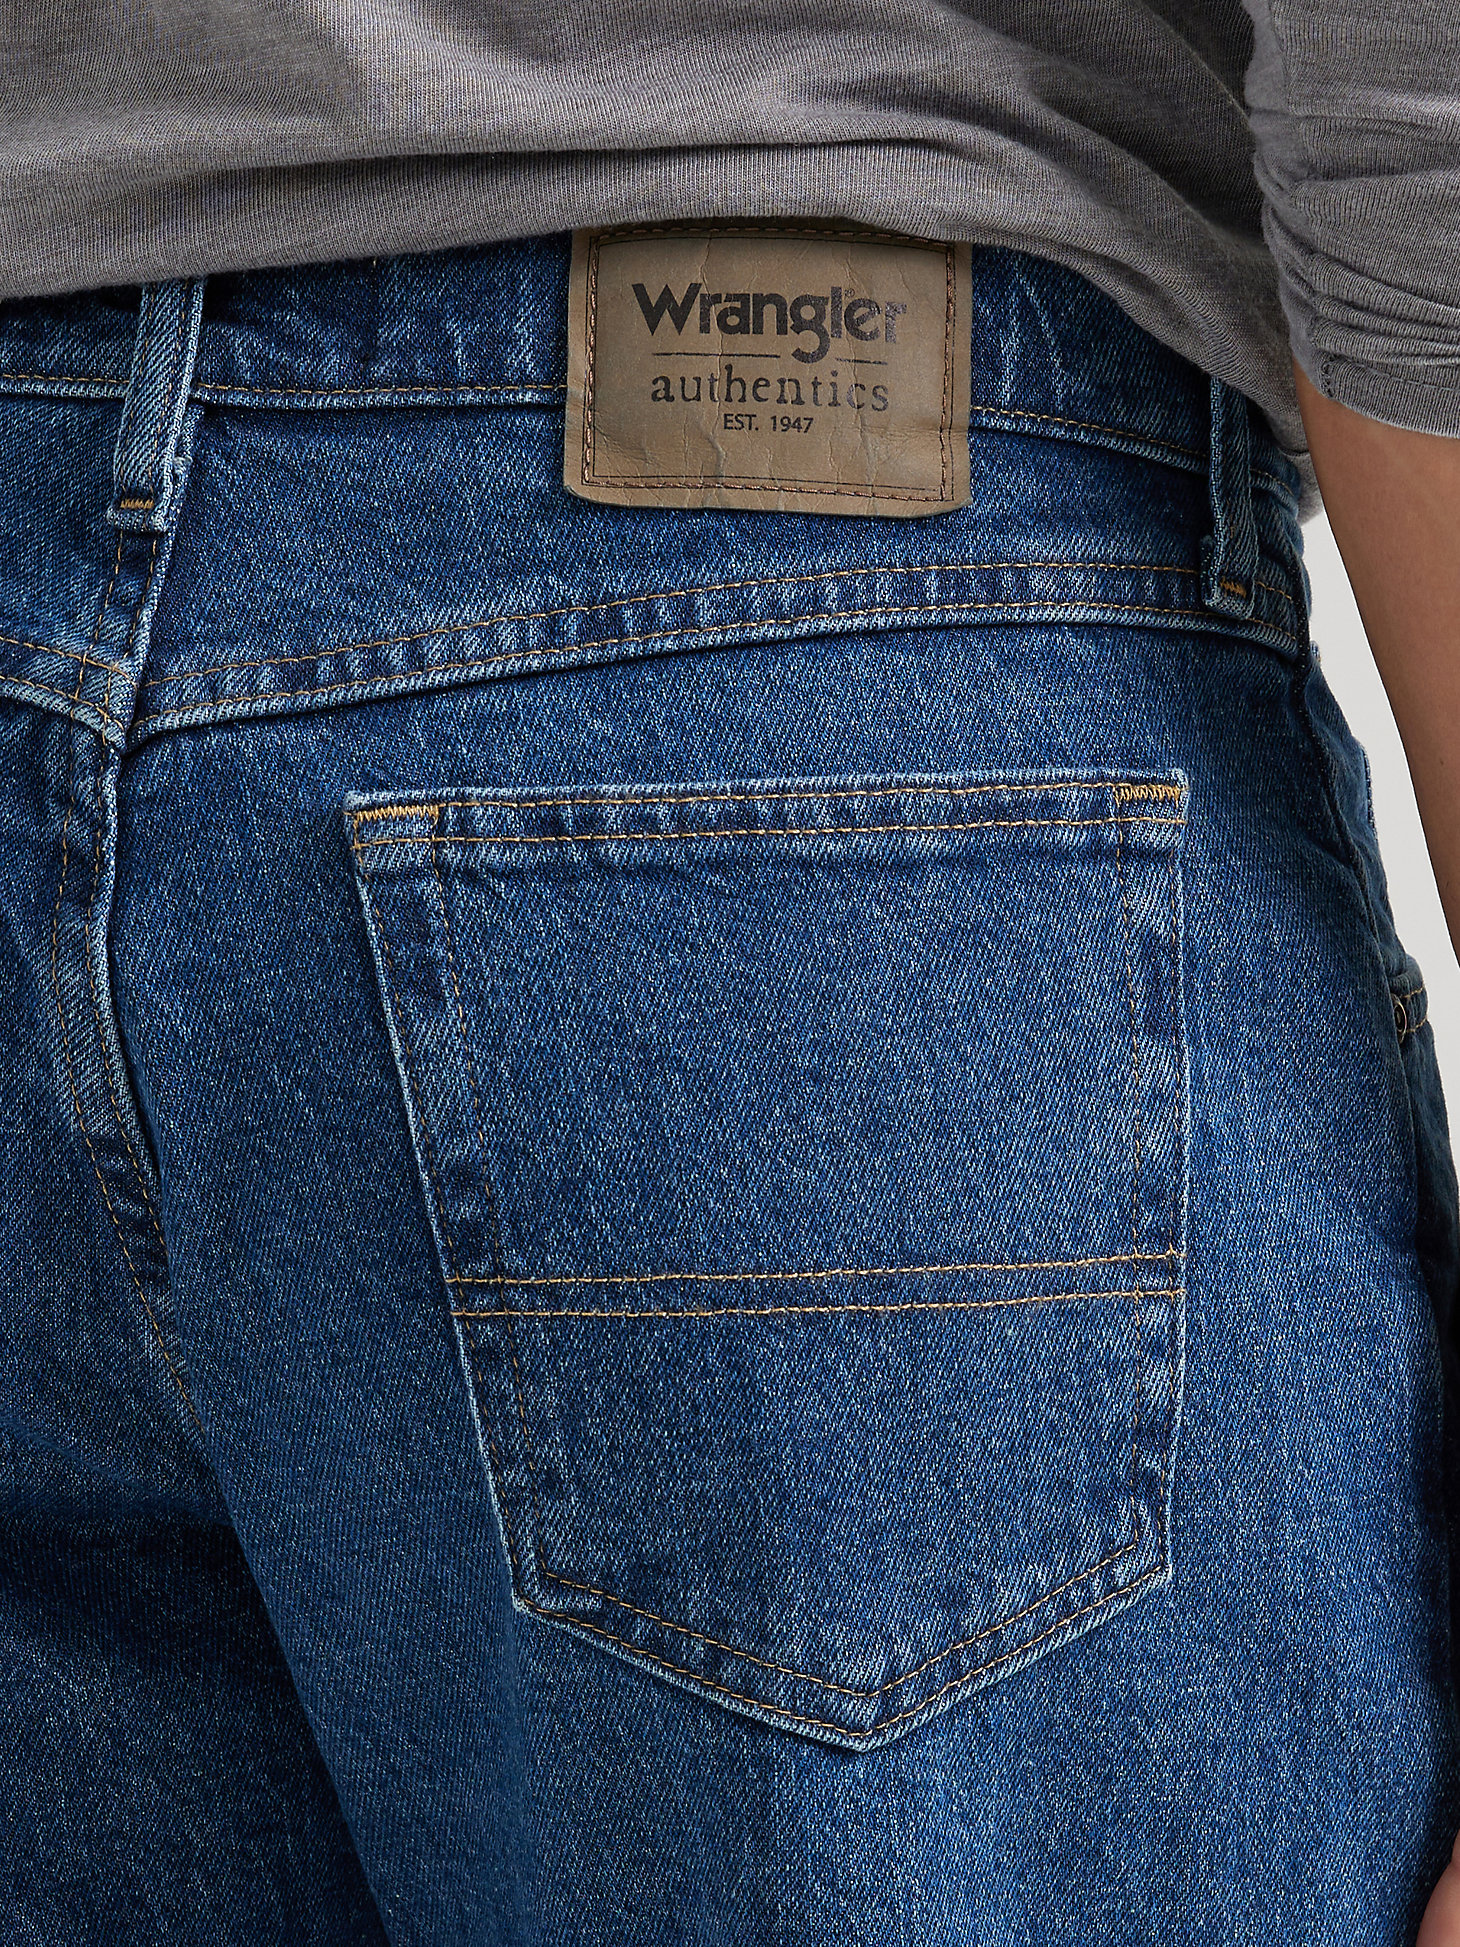 Men's Wrangler Authentics® Relaxed Fit Flex Jean in Dark Stonewash alternative view 2